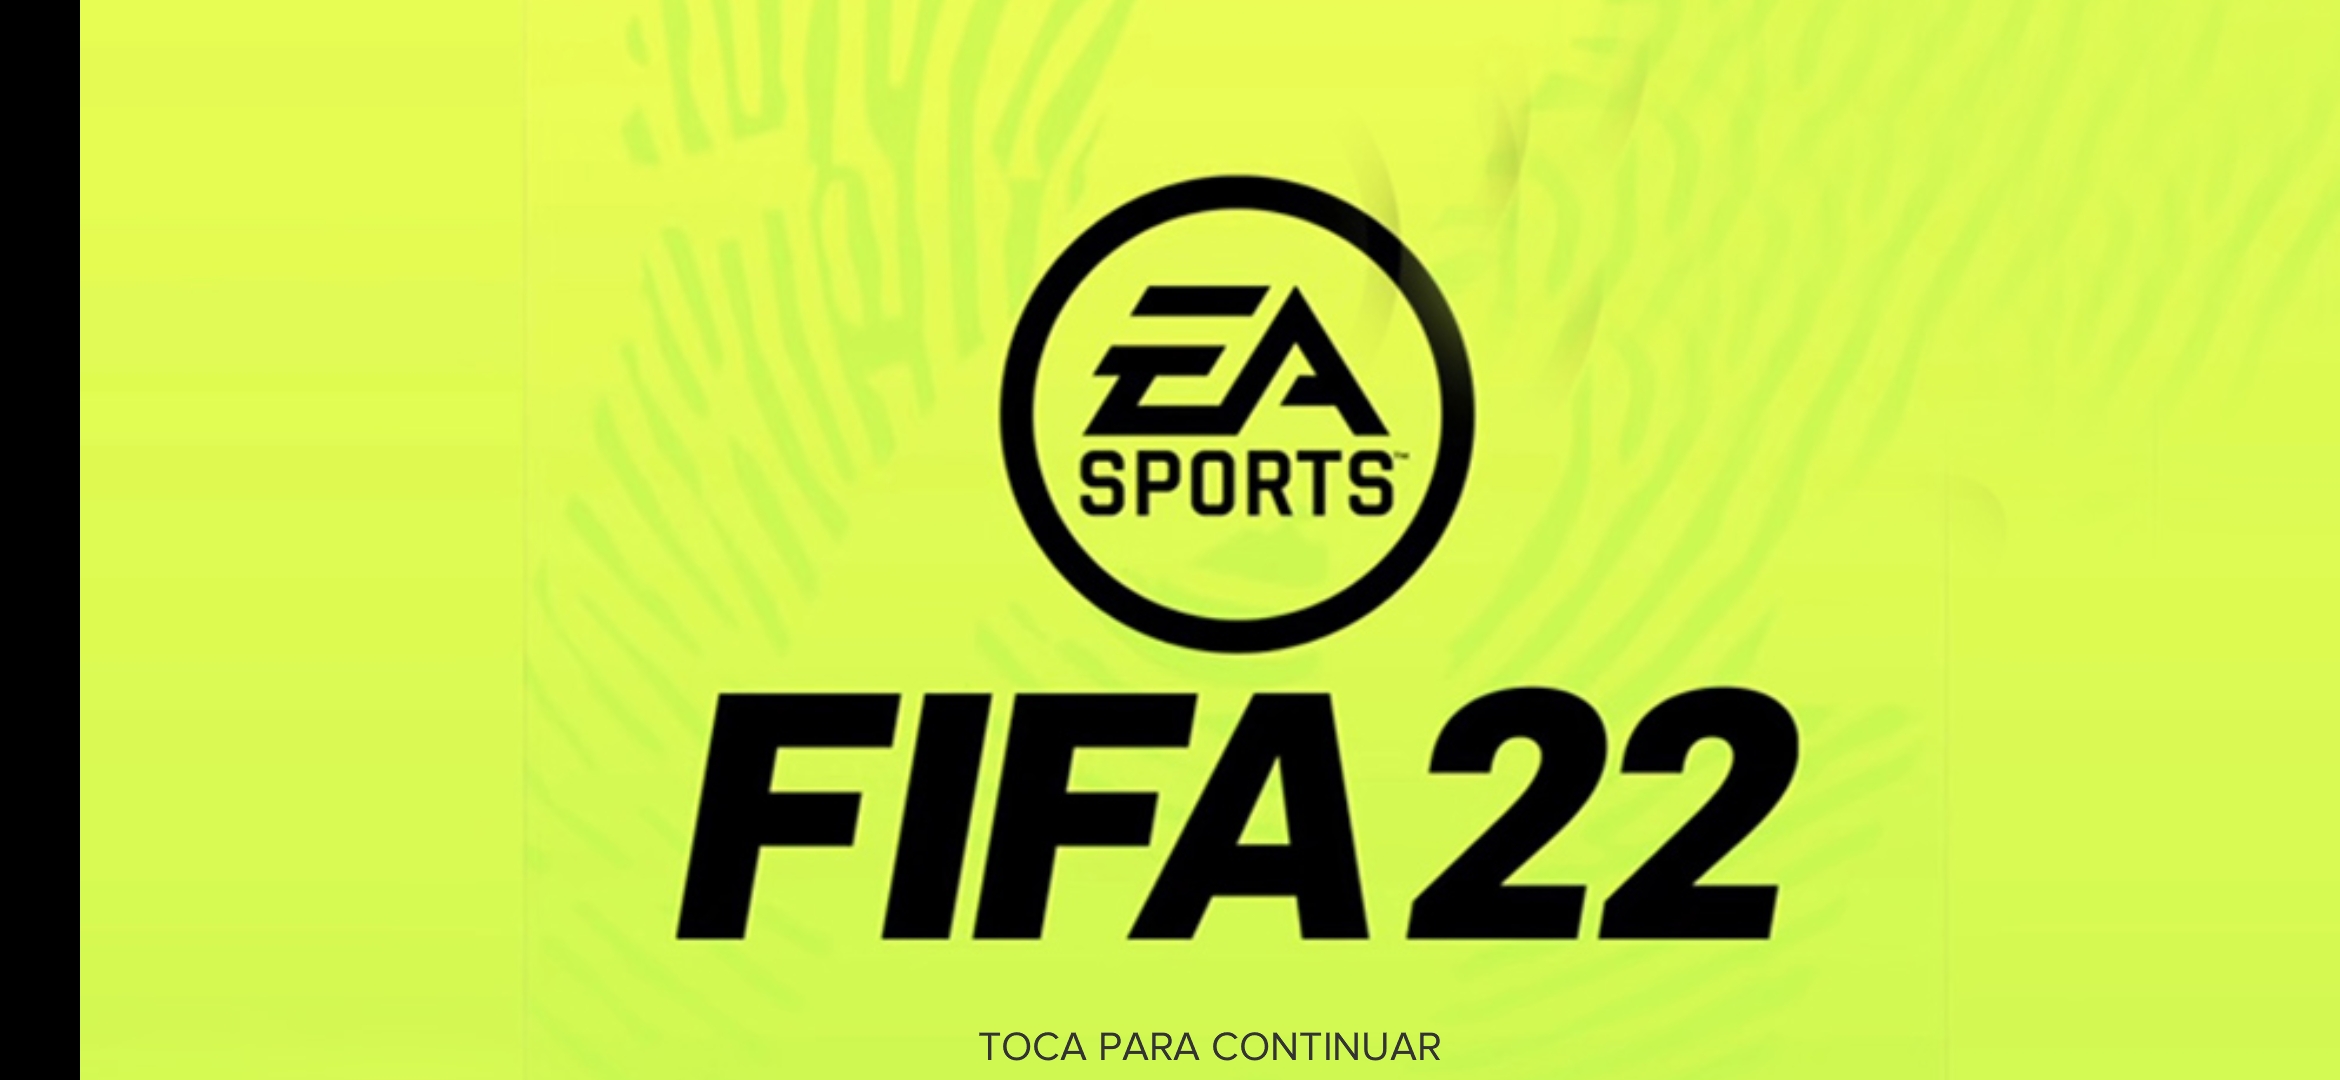 Fifa nsp. EA FIFA 22. Логотип FIFA 22. FIFA 2022 логотип. FIFA надпись.